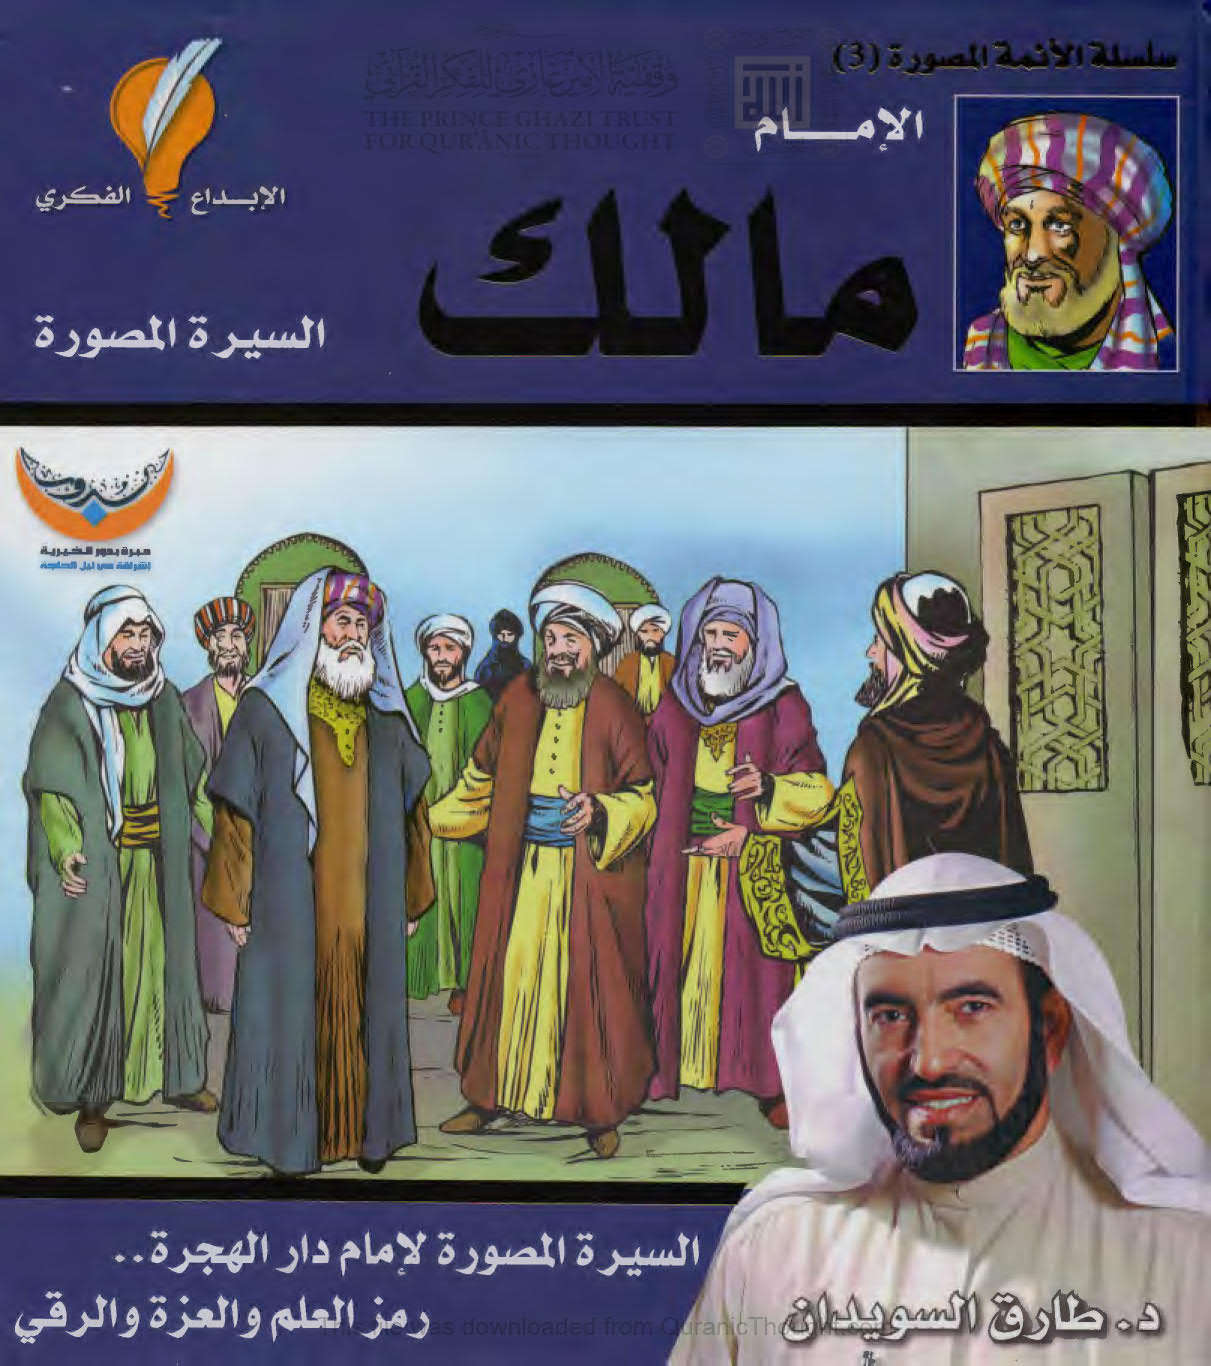 الإمام مالك _ السيرة المصورة لإمام دار الهجرة رمز العلم والعزة والرقي ( الطبعة الثانية _ 2013م )